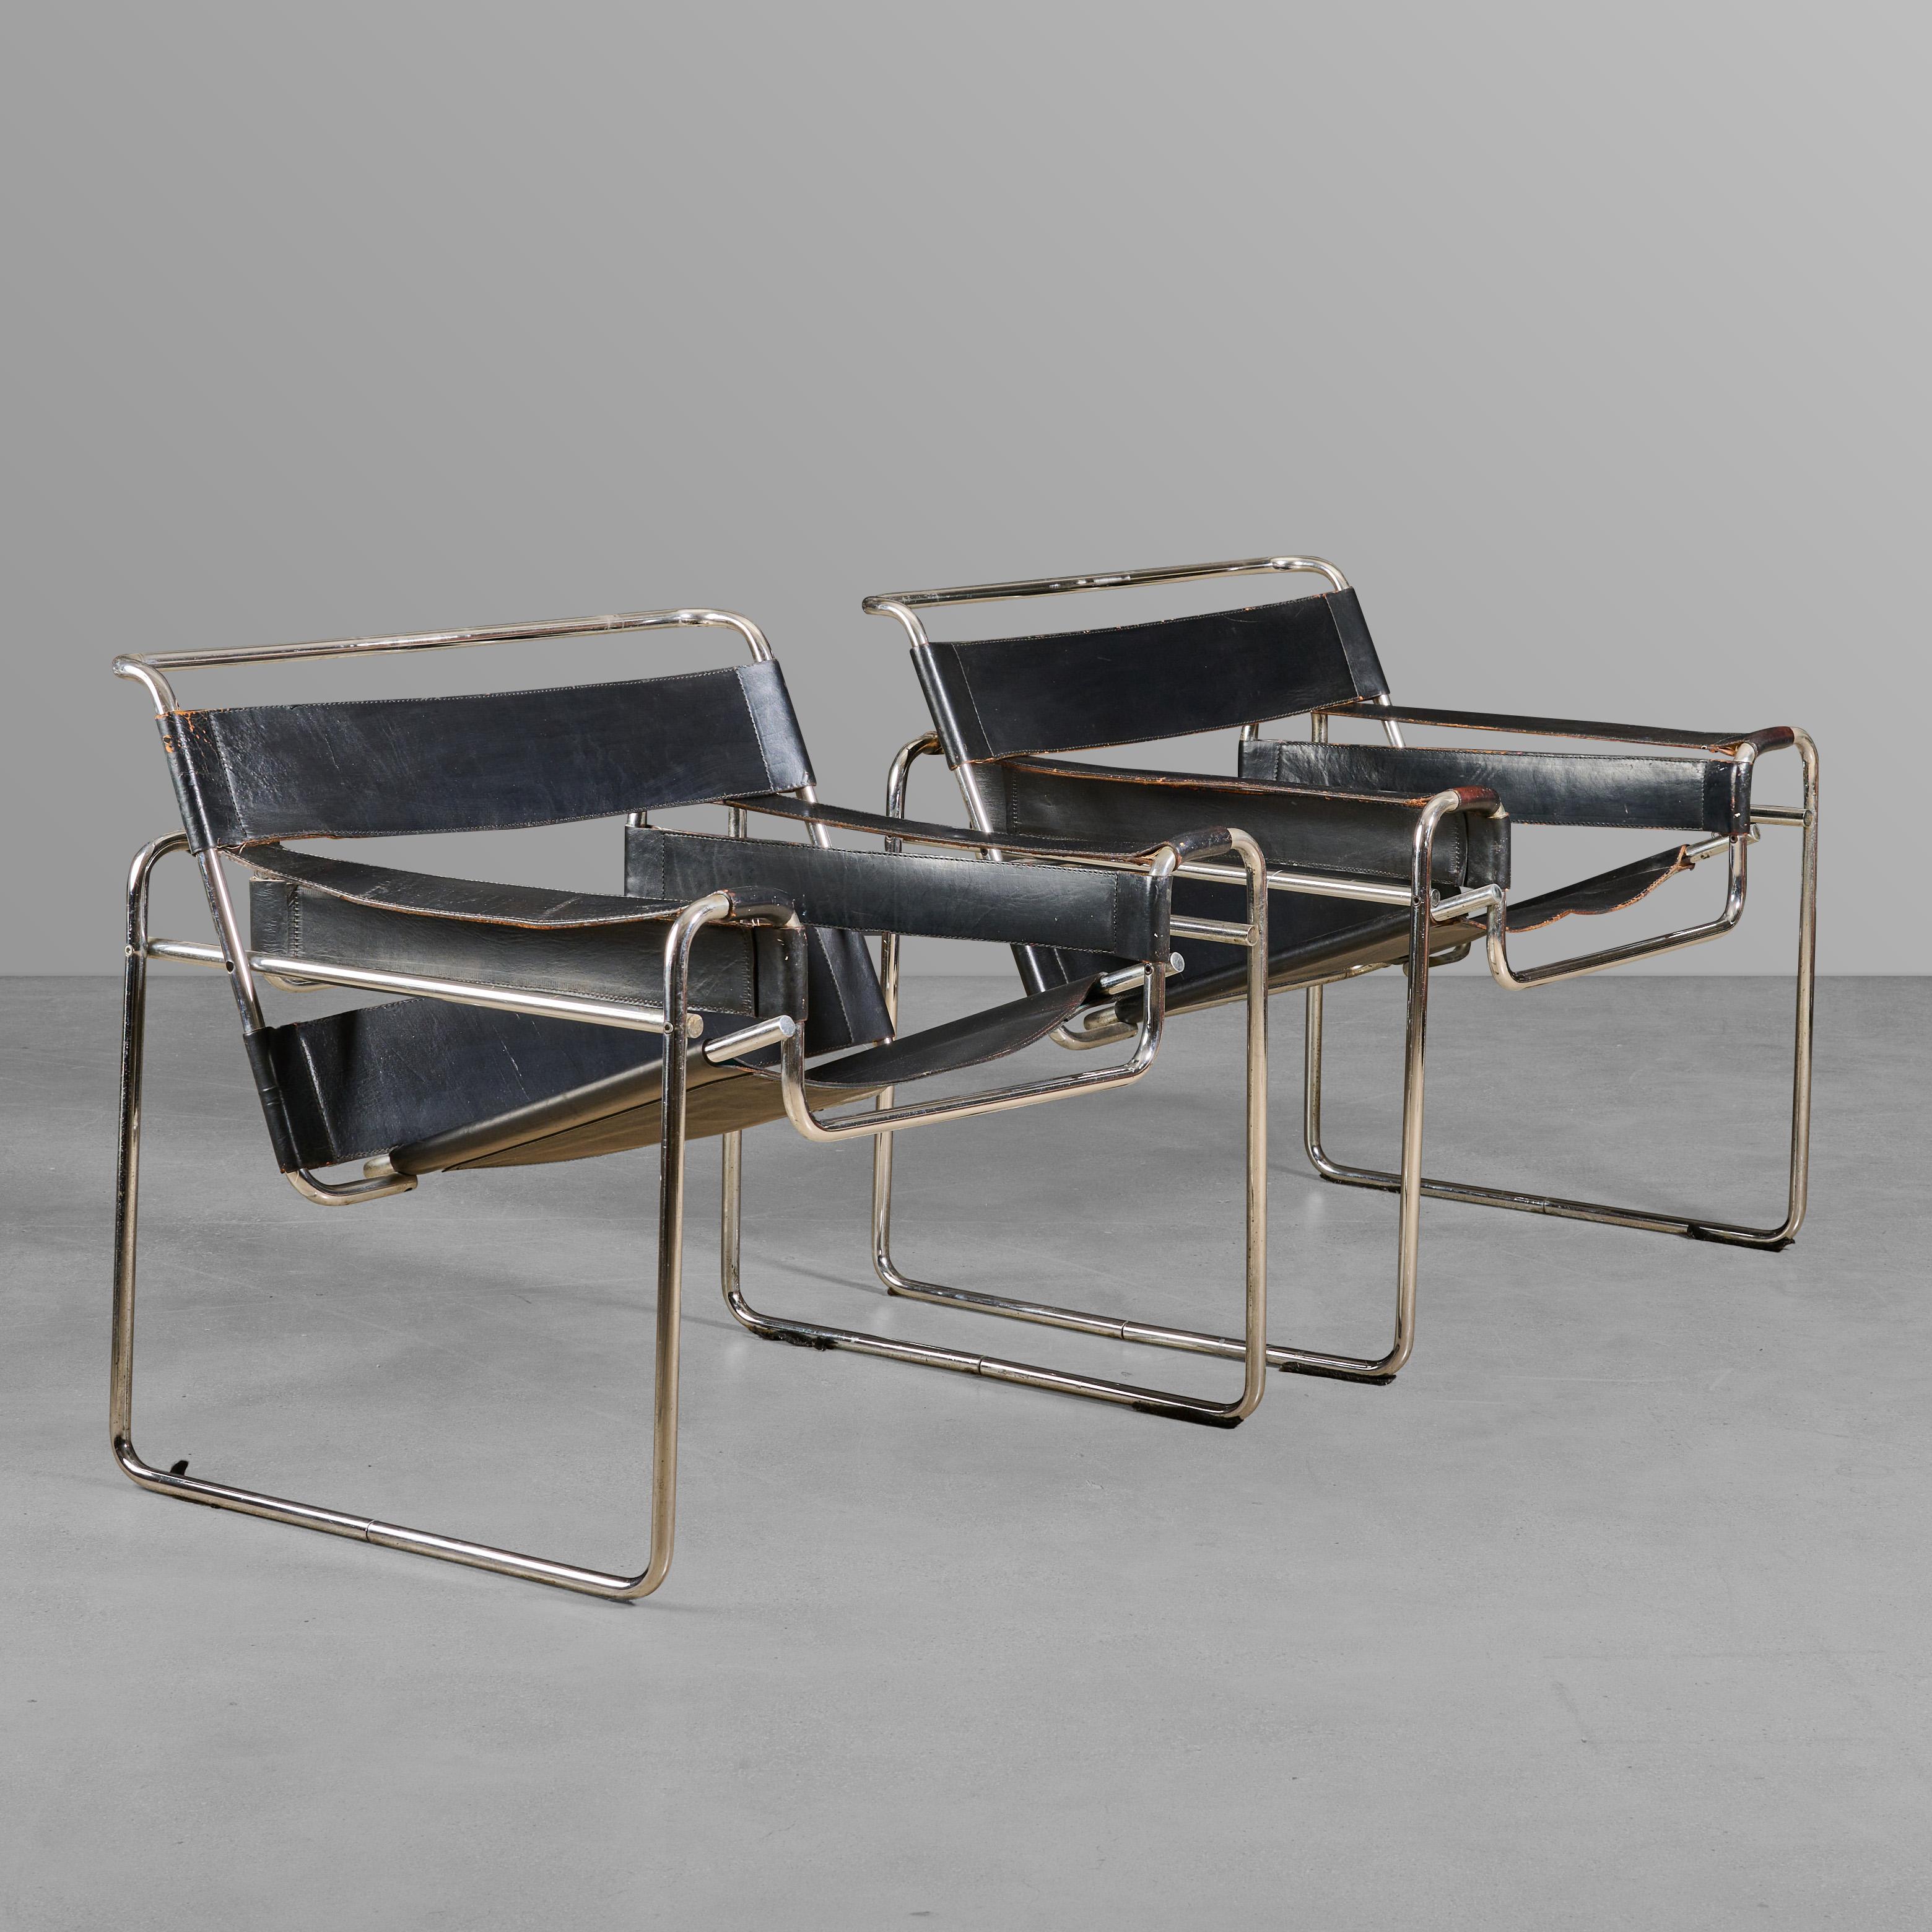 Chrom und Leder Paar Stühle. In Anlehnung an den Stuhl B3 von Marcel Breuer.

